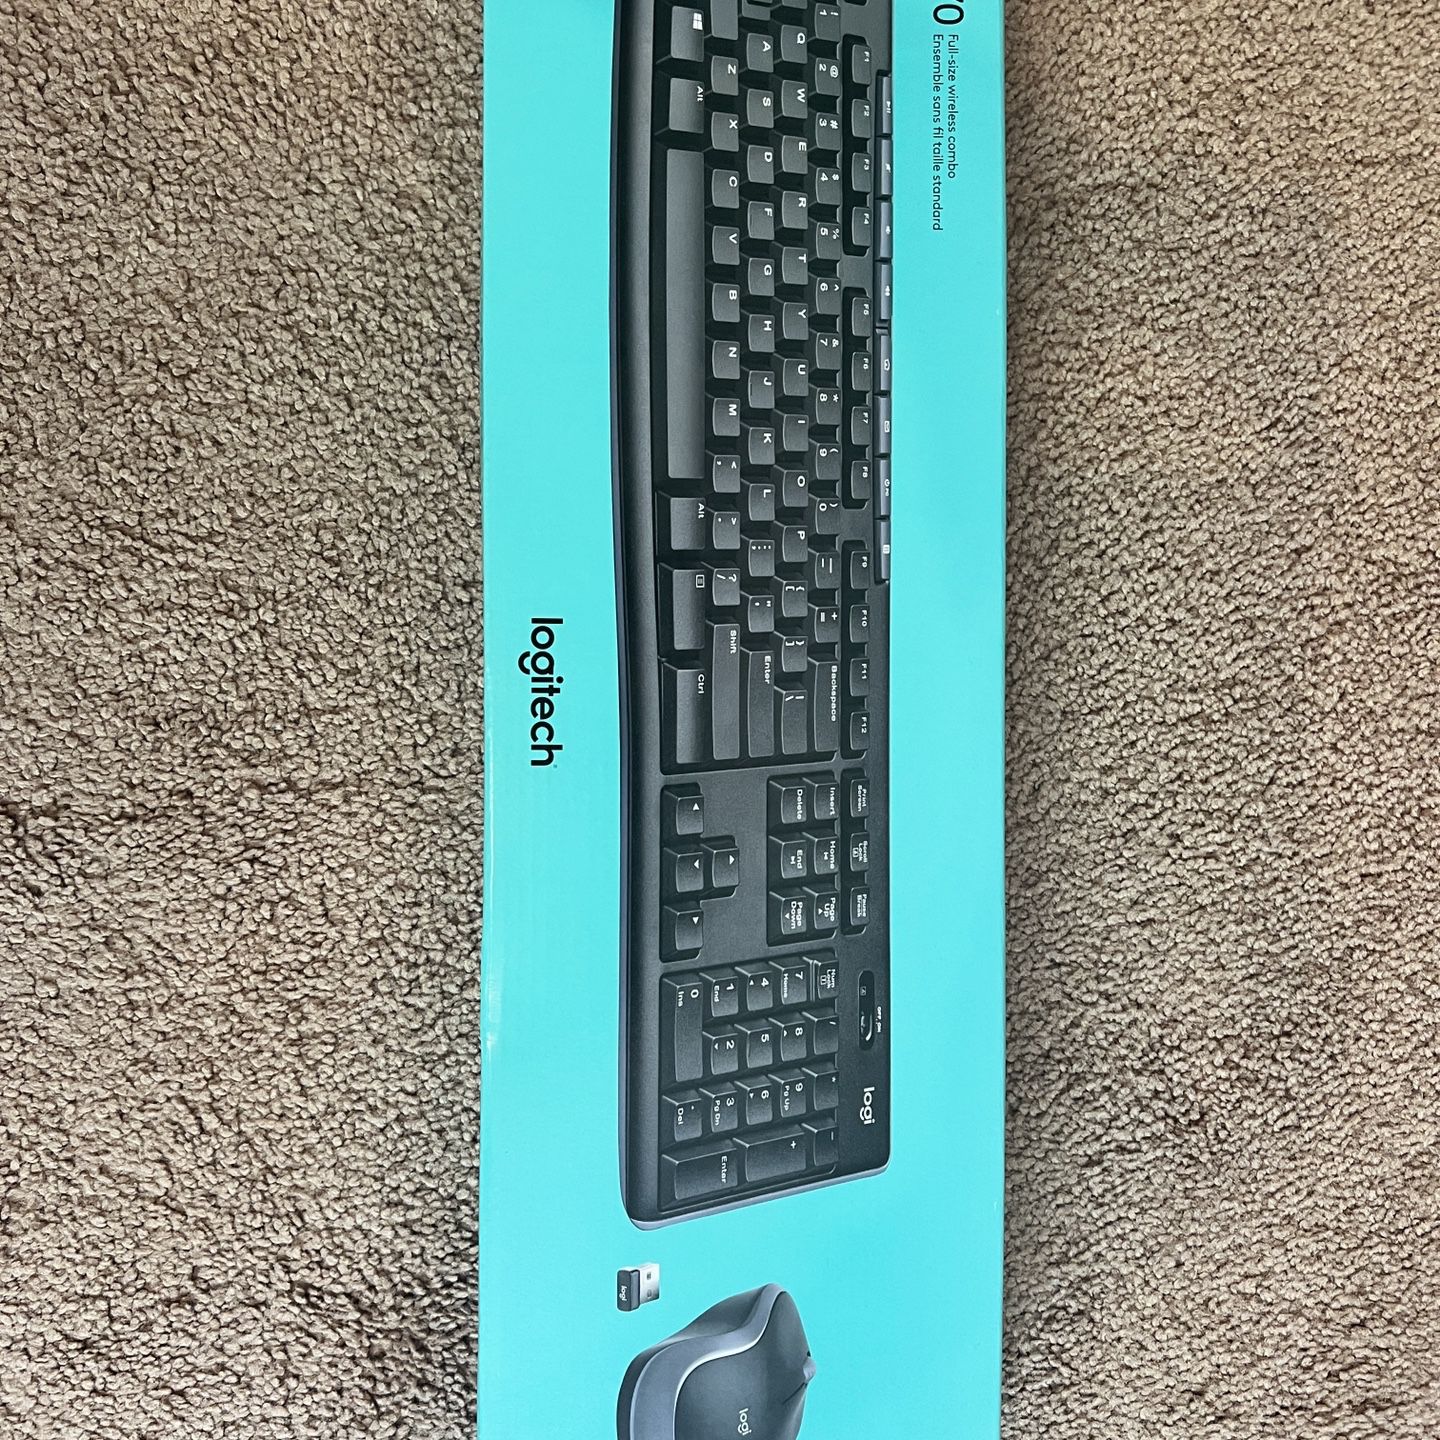 Logitech MK270 Full-size Wireless Combo Keyboard